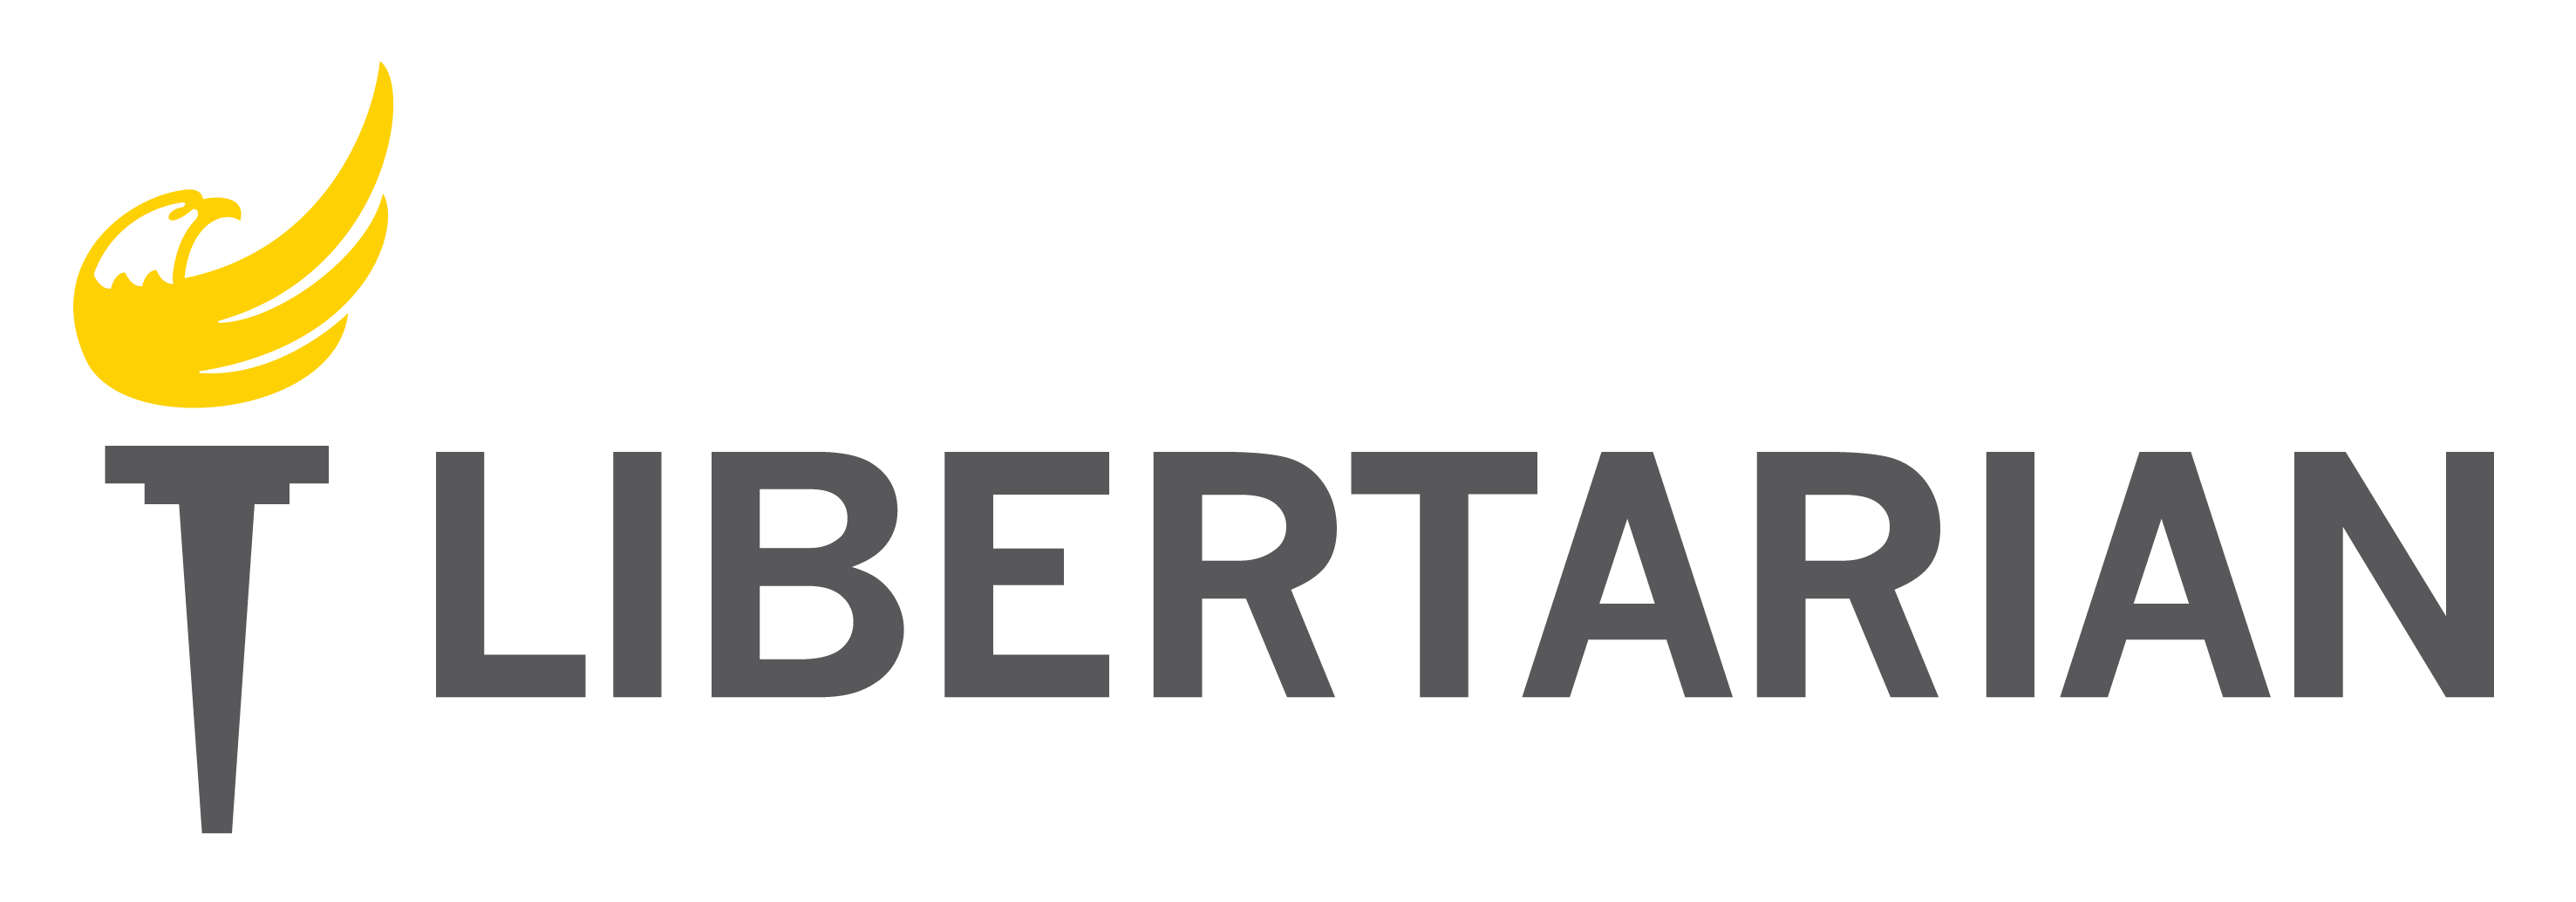 Libertarian Logo - Libertarian Party Logo Artwork; High Resolution Transparent PNG